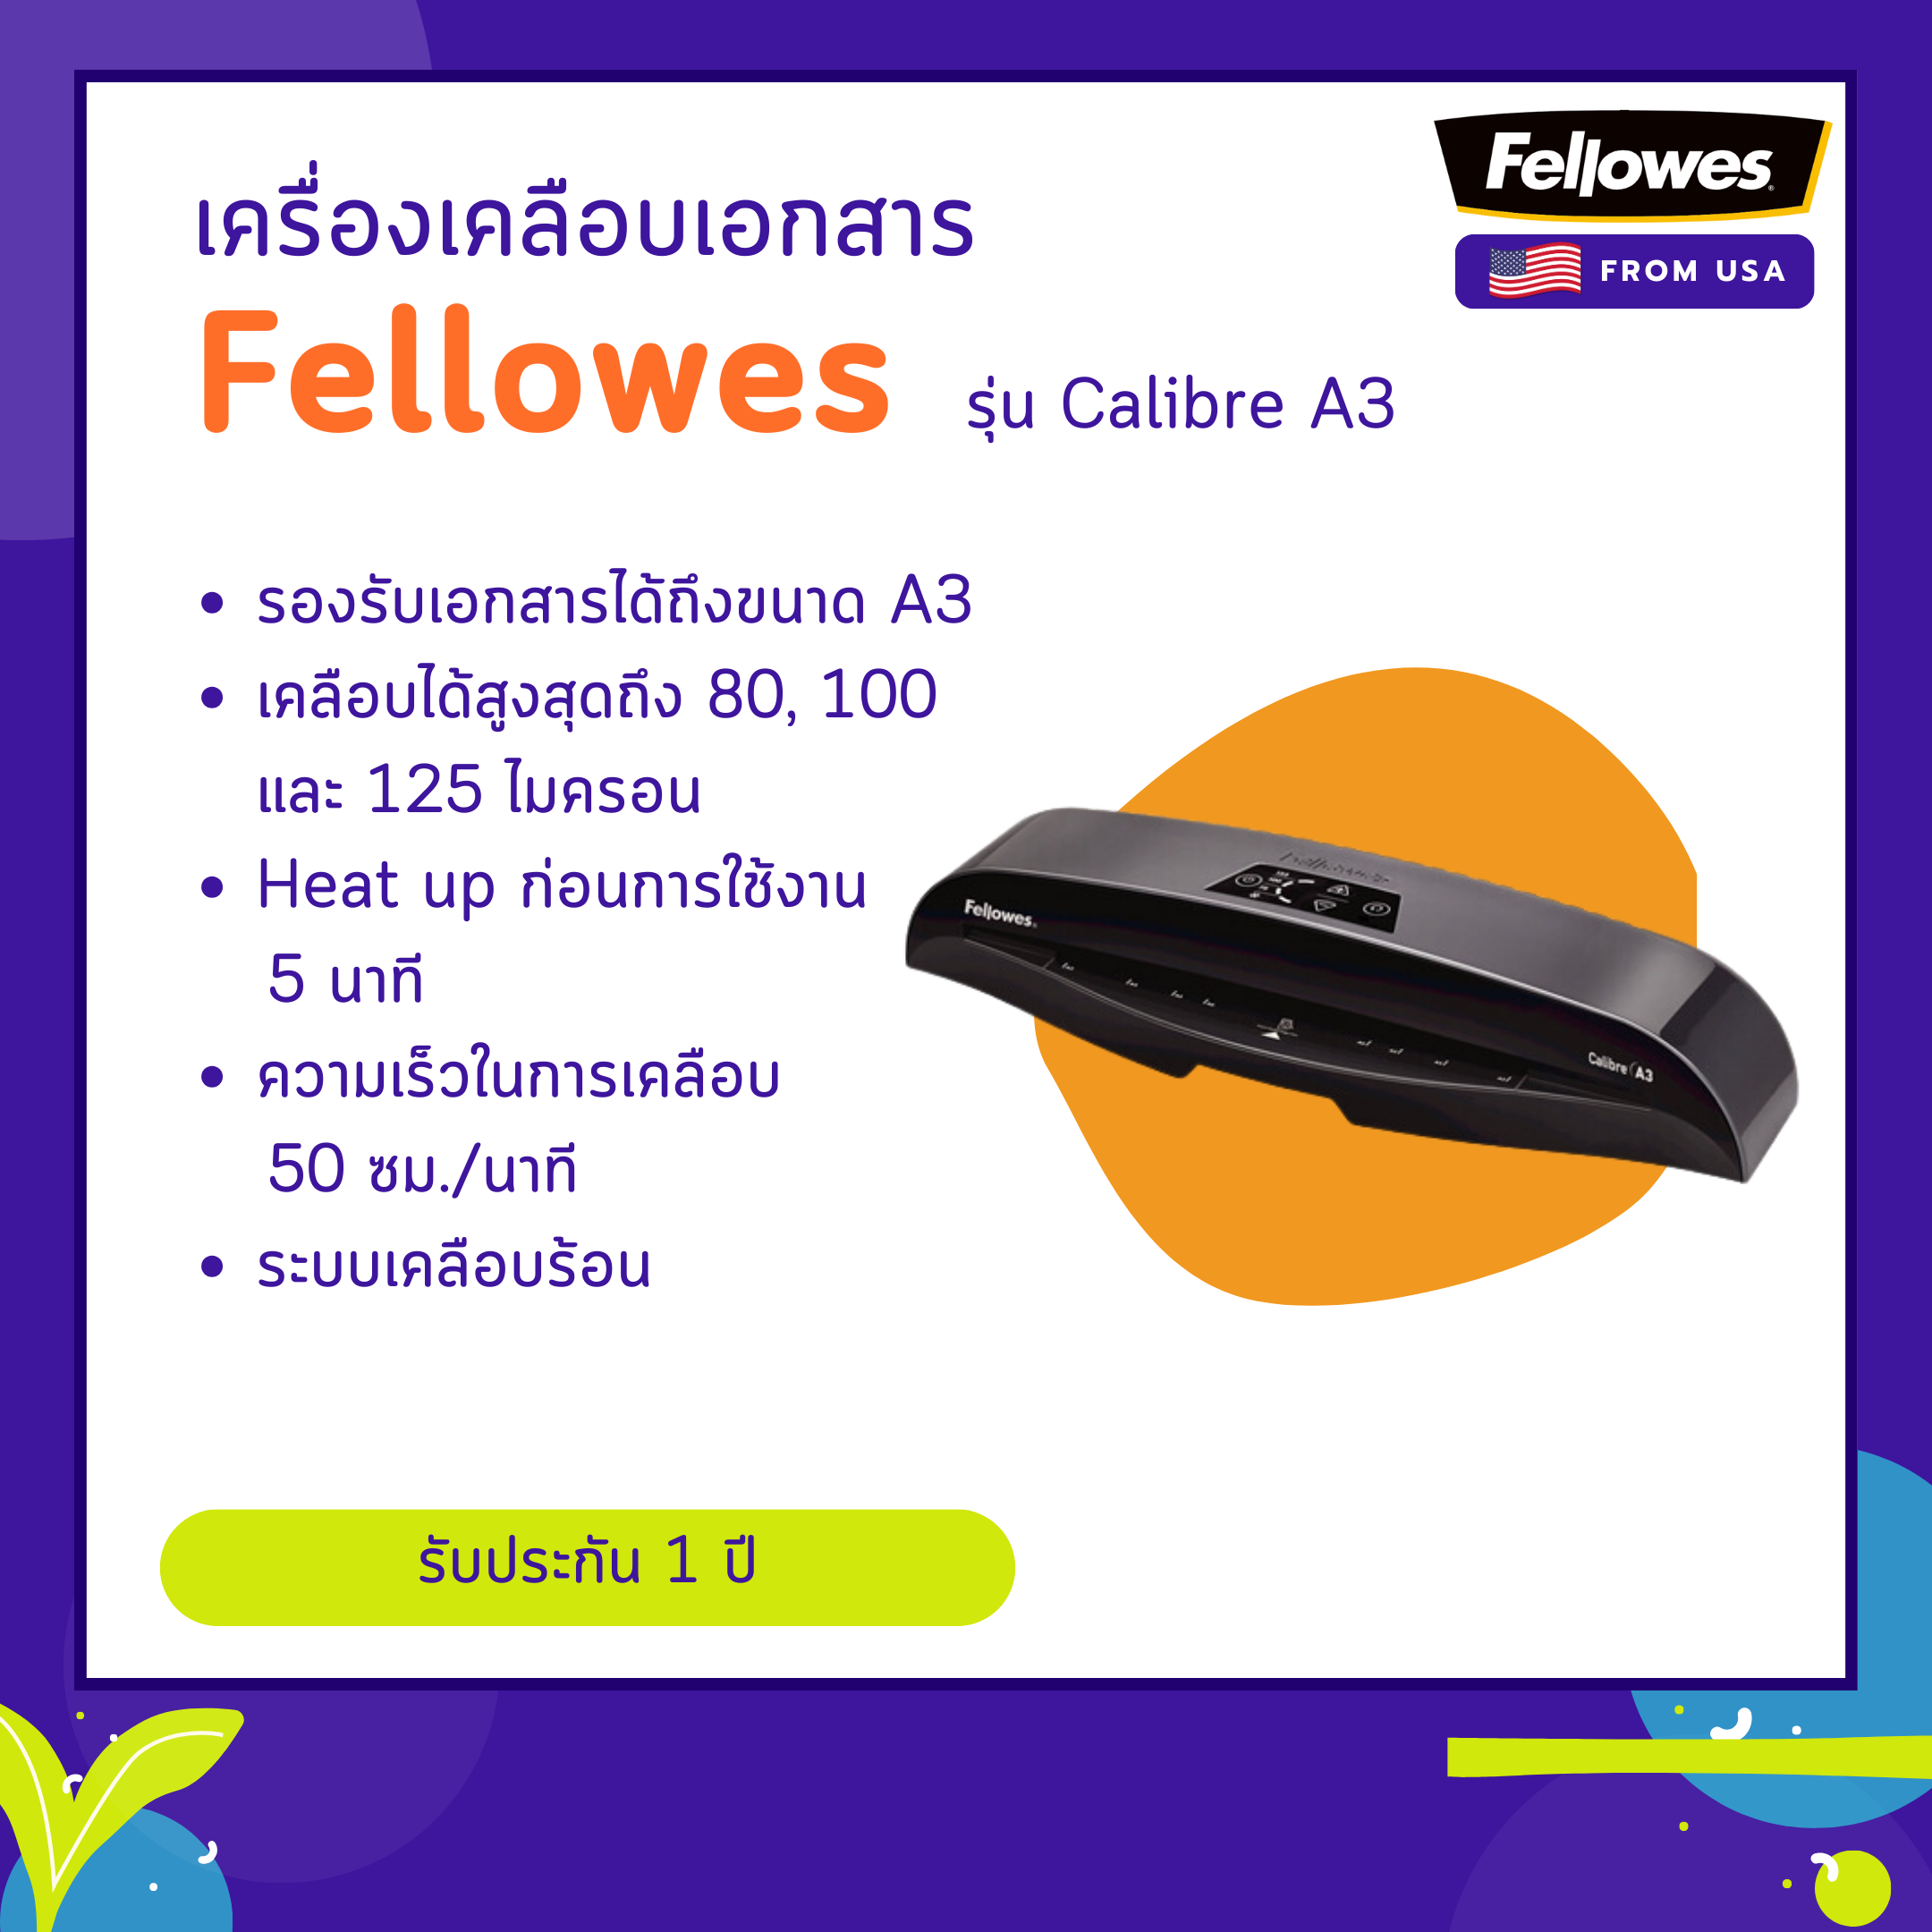 เครื่องเคลือบบัตร Fellowes รุ่น Calibre A3 (คาลิเบอร์ เอ3)